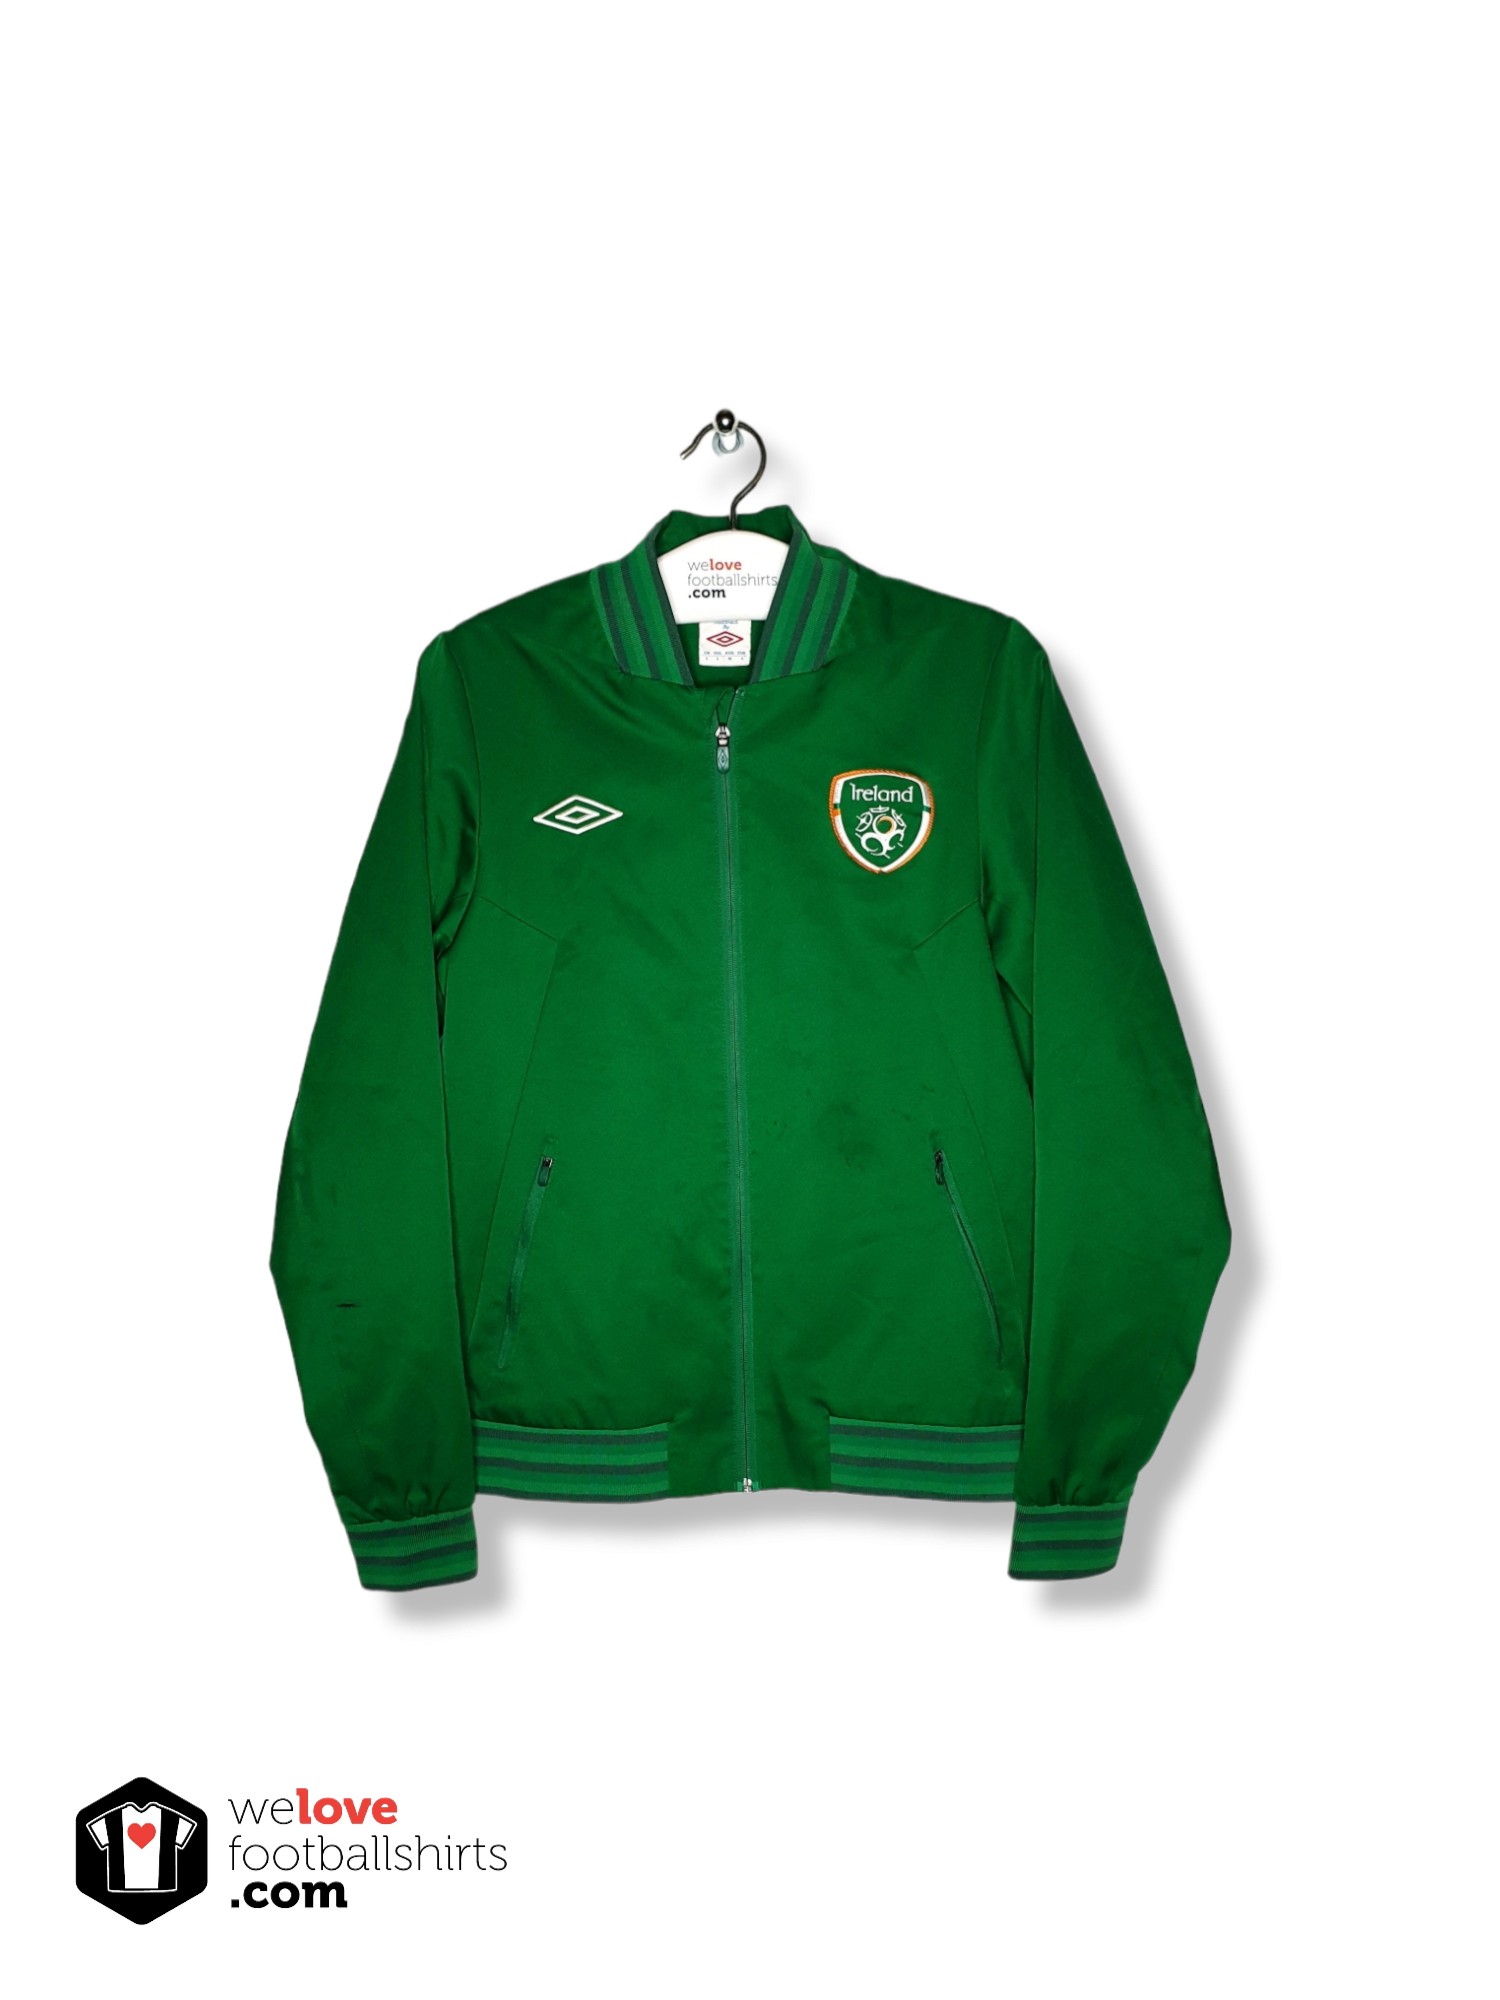 00's umbro Ireland warm-up jacket